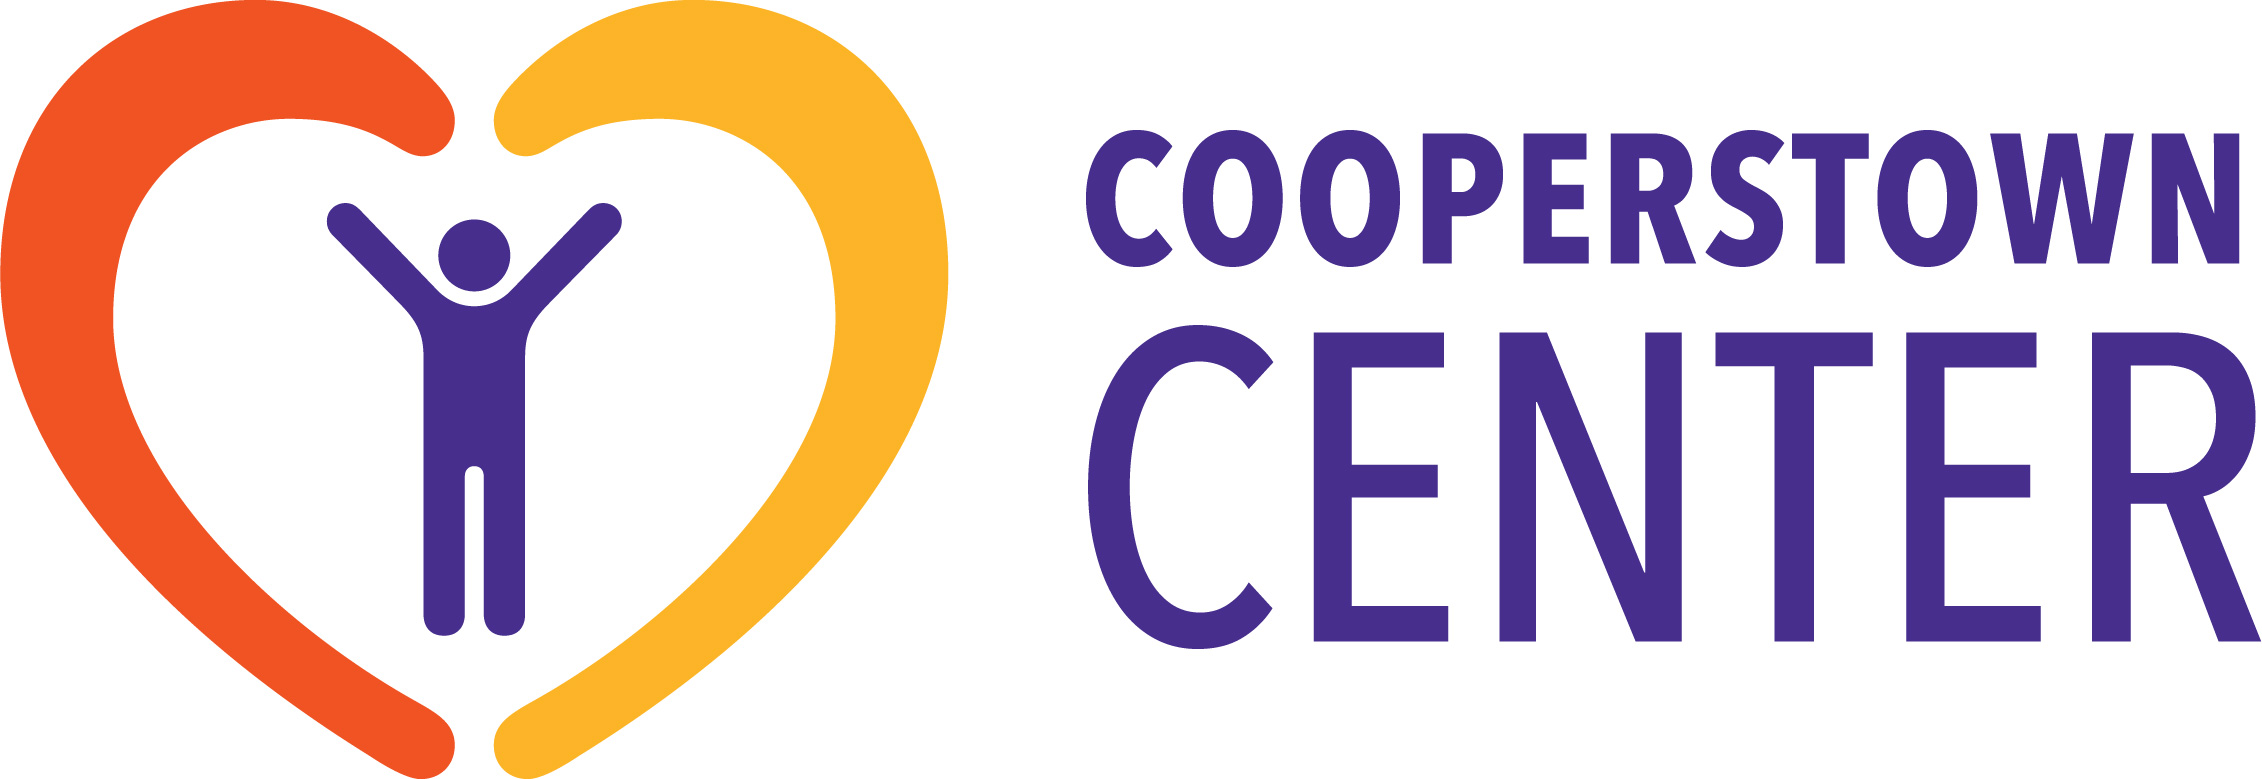 Cooperstown Center logo